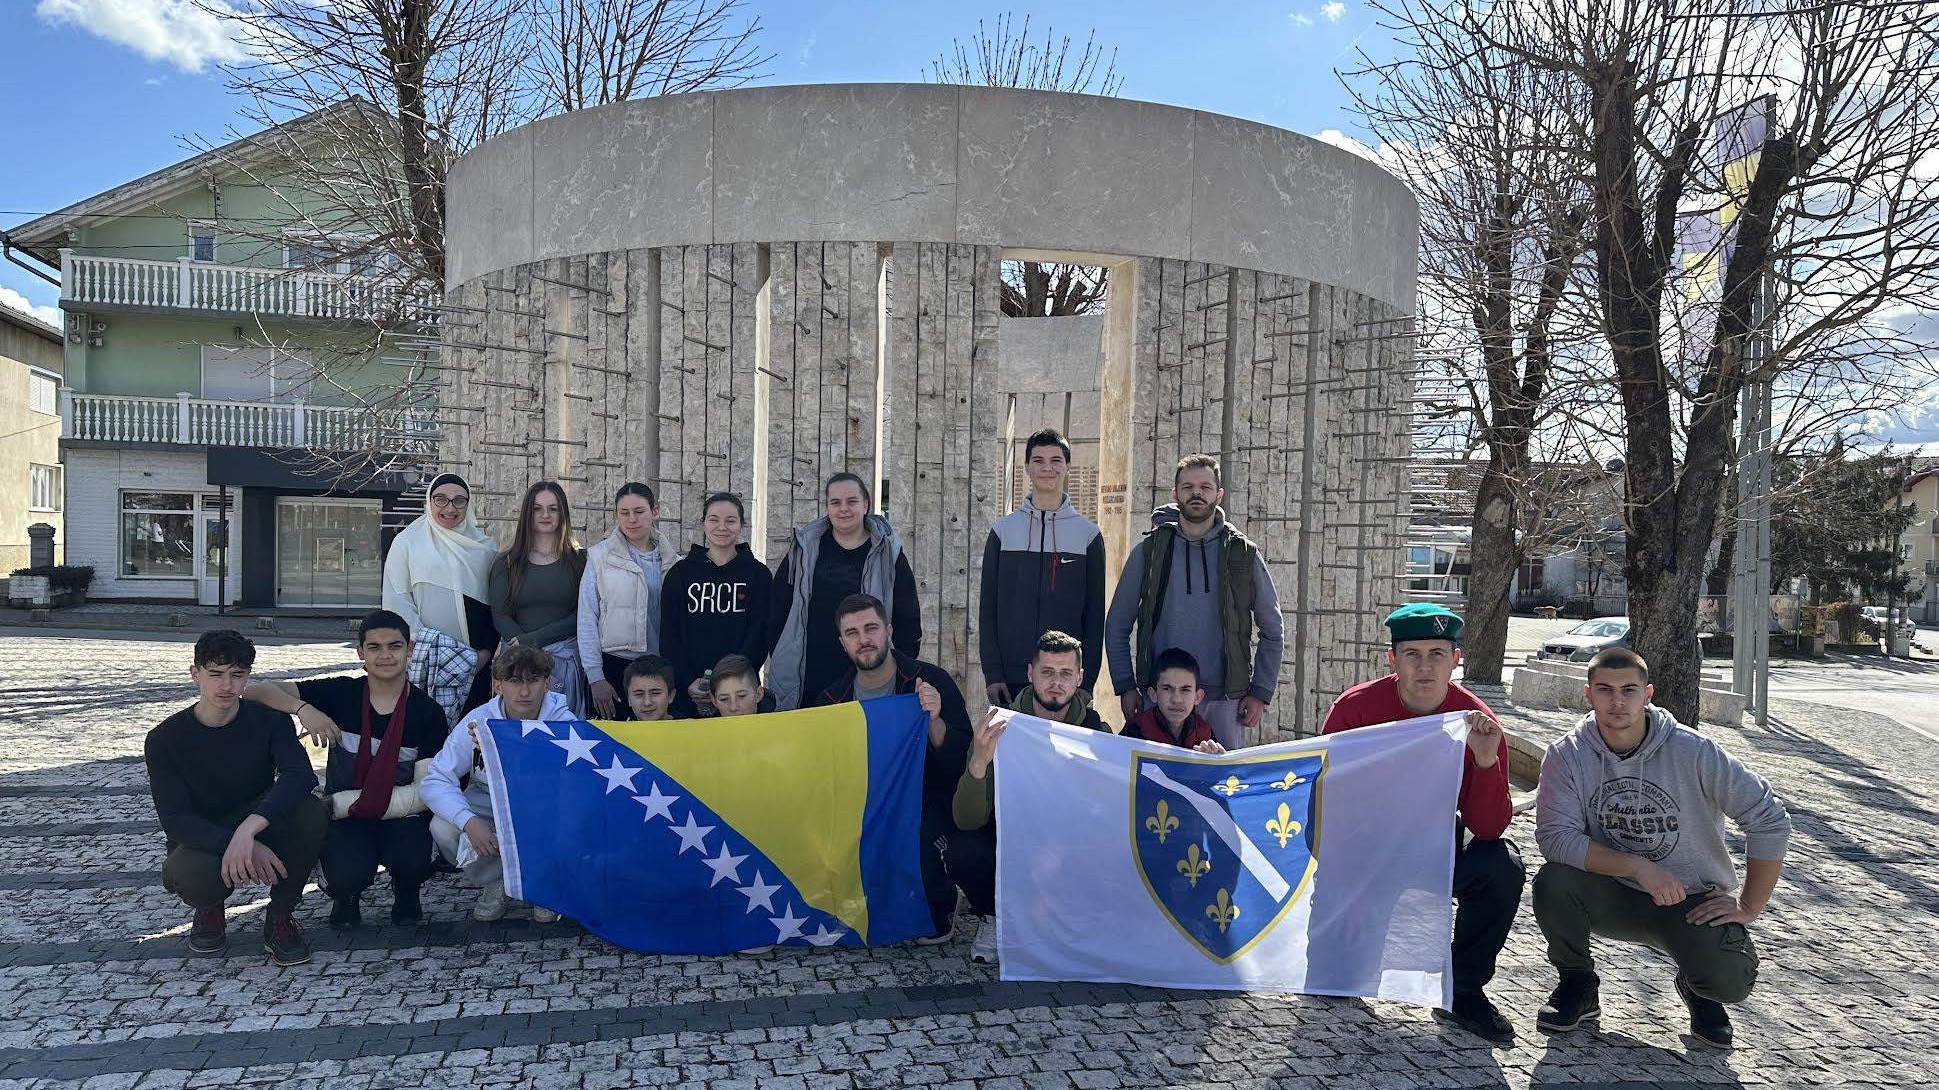 Mreža mladih MIZ Kozarac čišćenjem šehidskog mezarja i spomen-obilježja obilježila Dan nezavisnosti